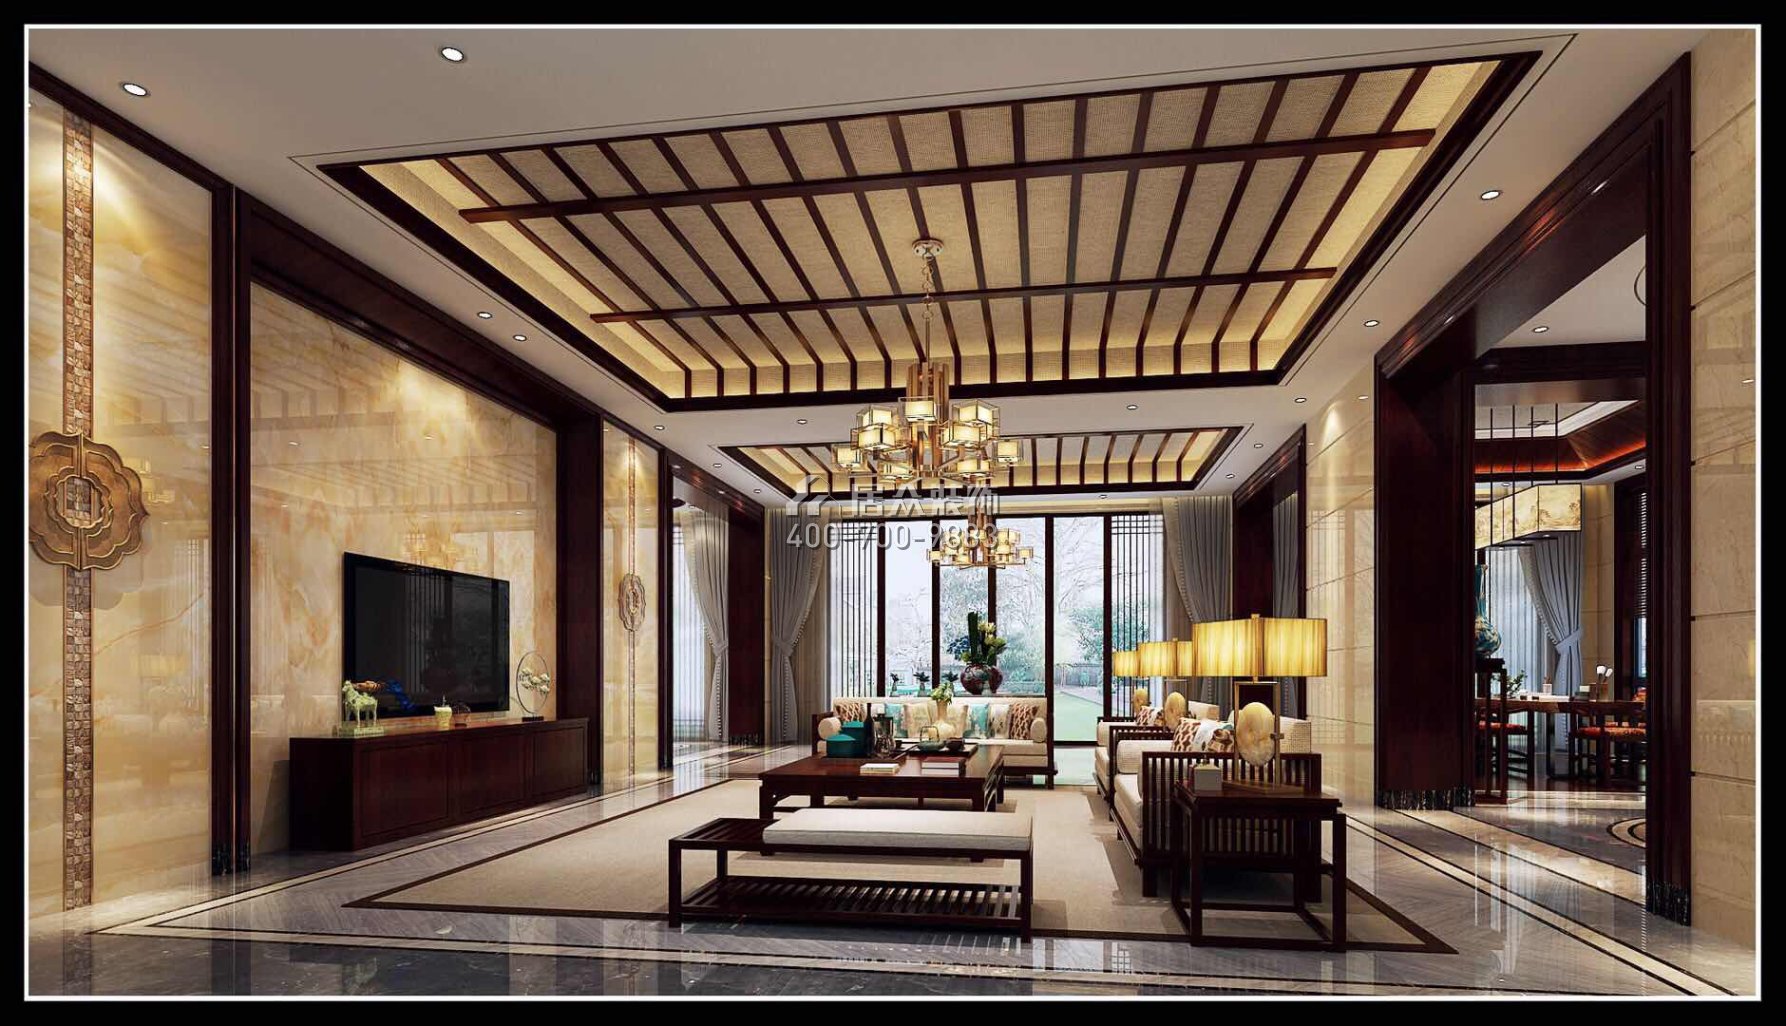 翡翠松山湖800平方米中式风格别墅户型客厅kok电竞平台效果图